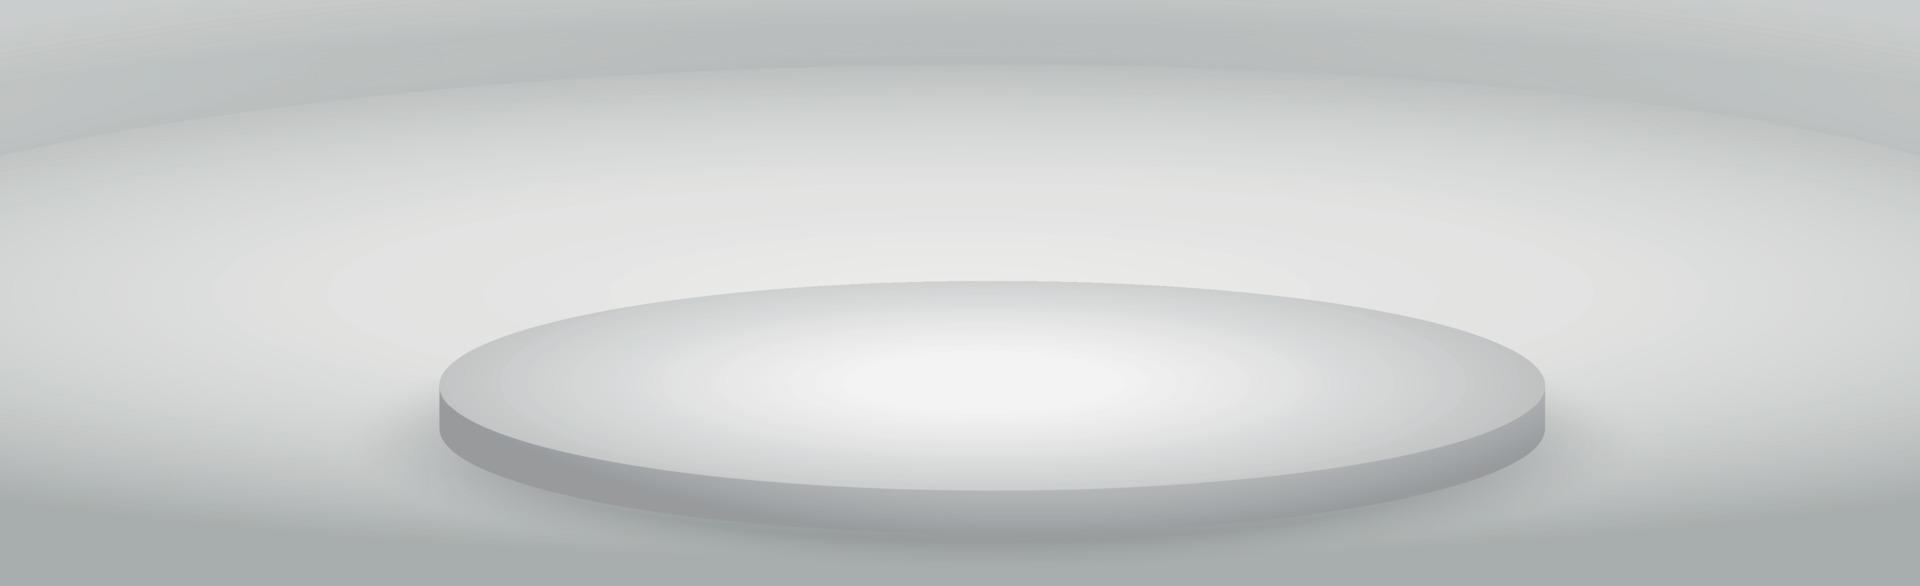 vit med grå panoramastudiobakgrund med vit glöd - vektor